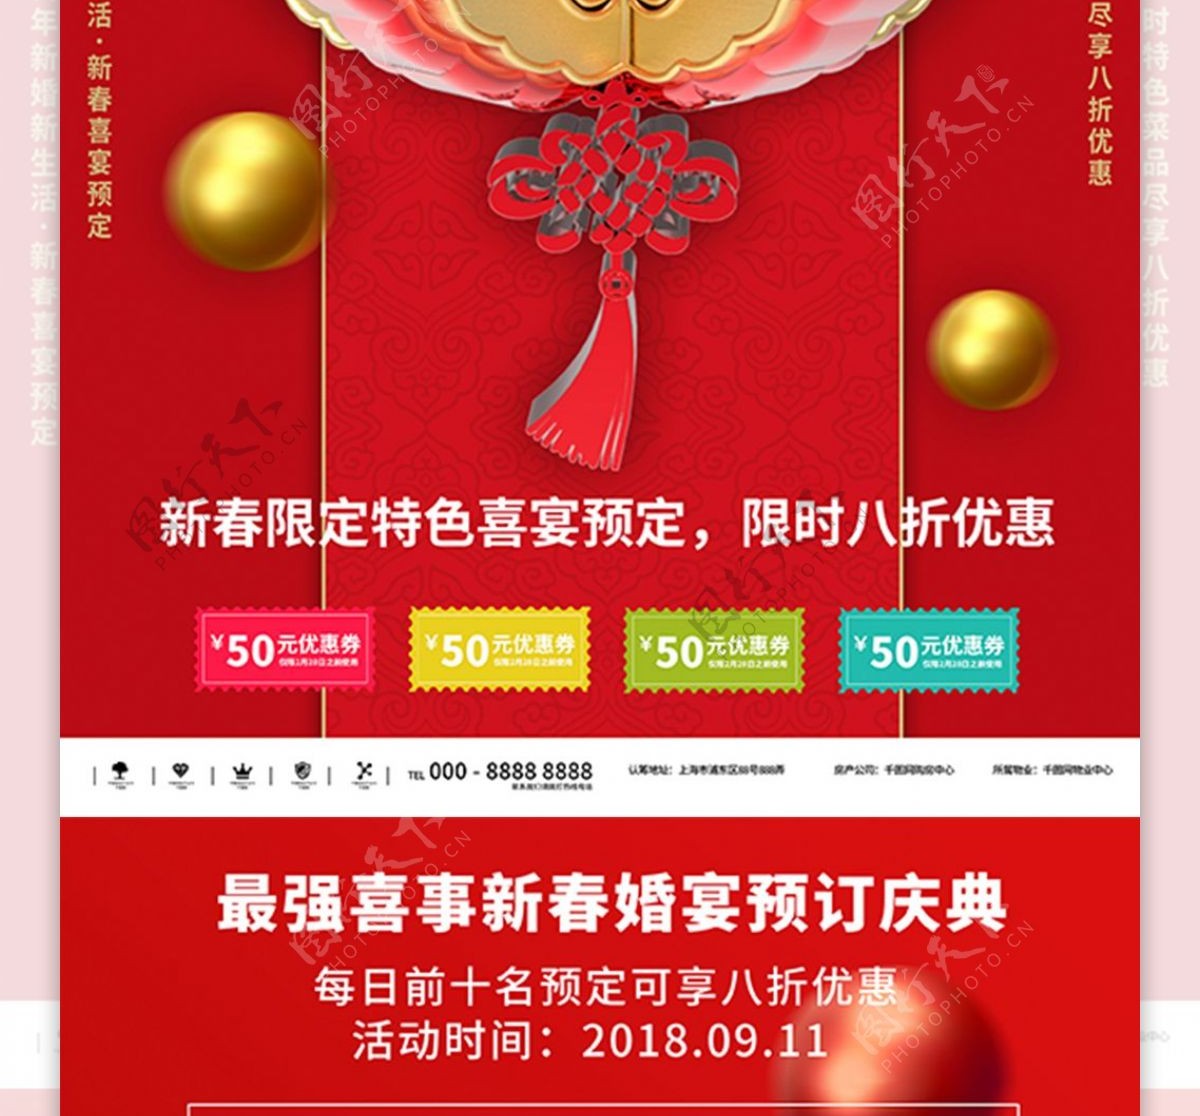 红色2019最强喜事喜宴预定商业宣传海报